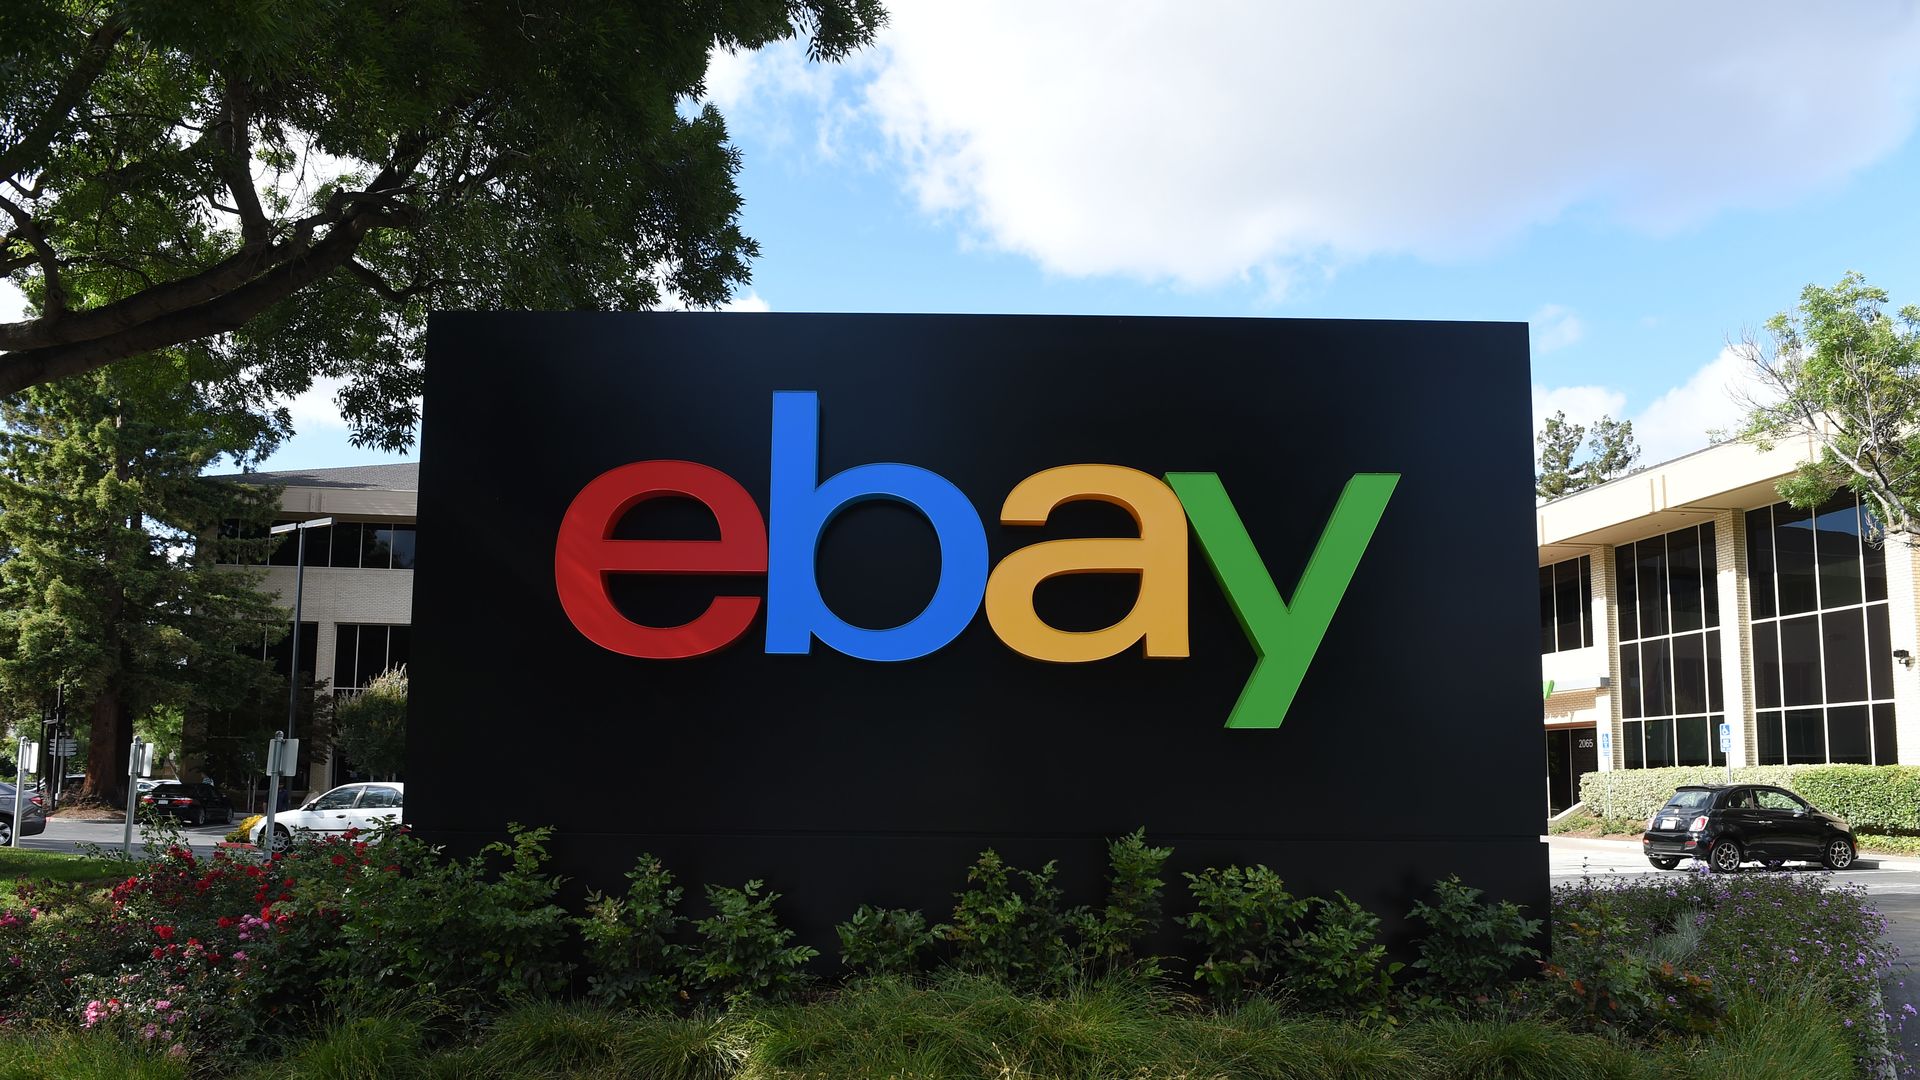 The Ebay logo.